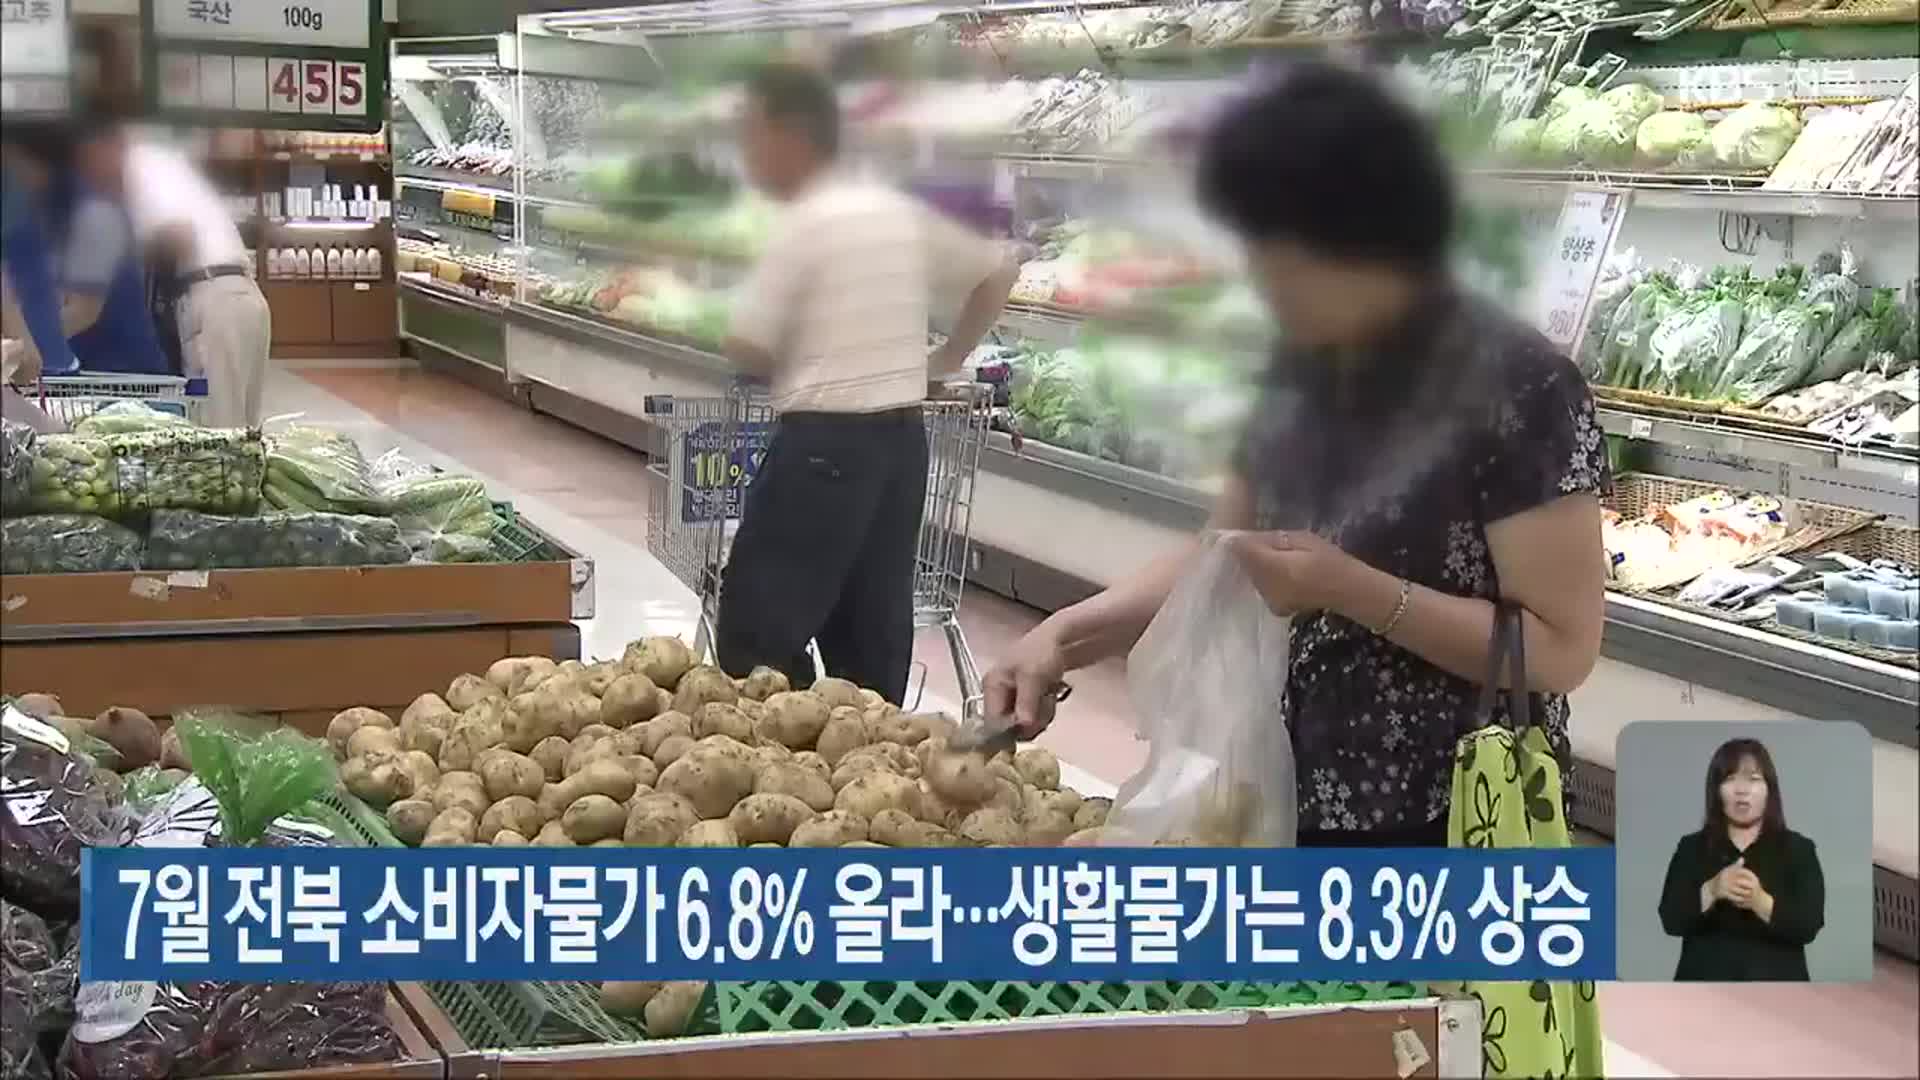 7월 전북 소비자물가 6.8% 올라…생활물가는 8.3% 상승